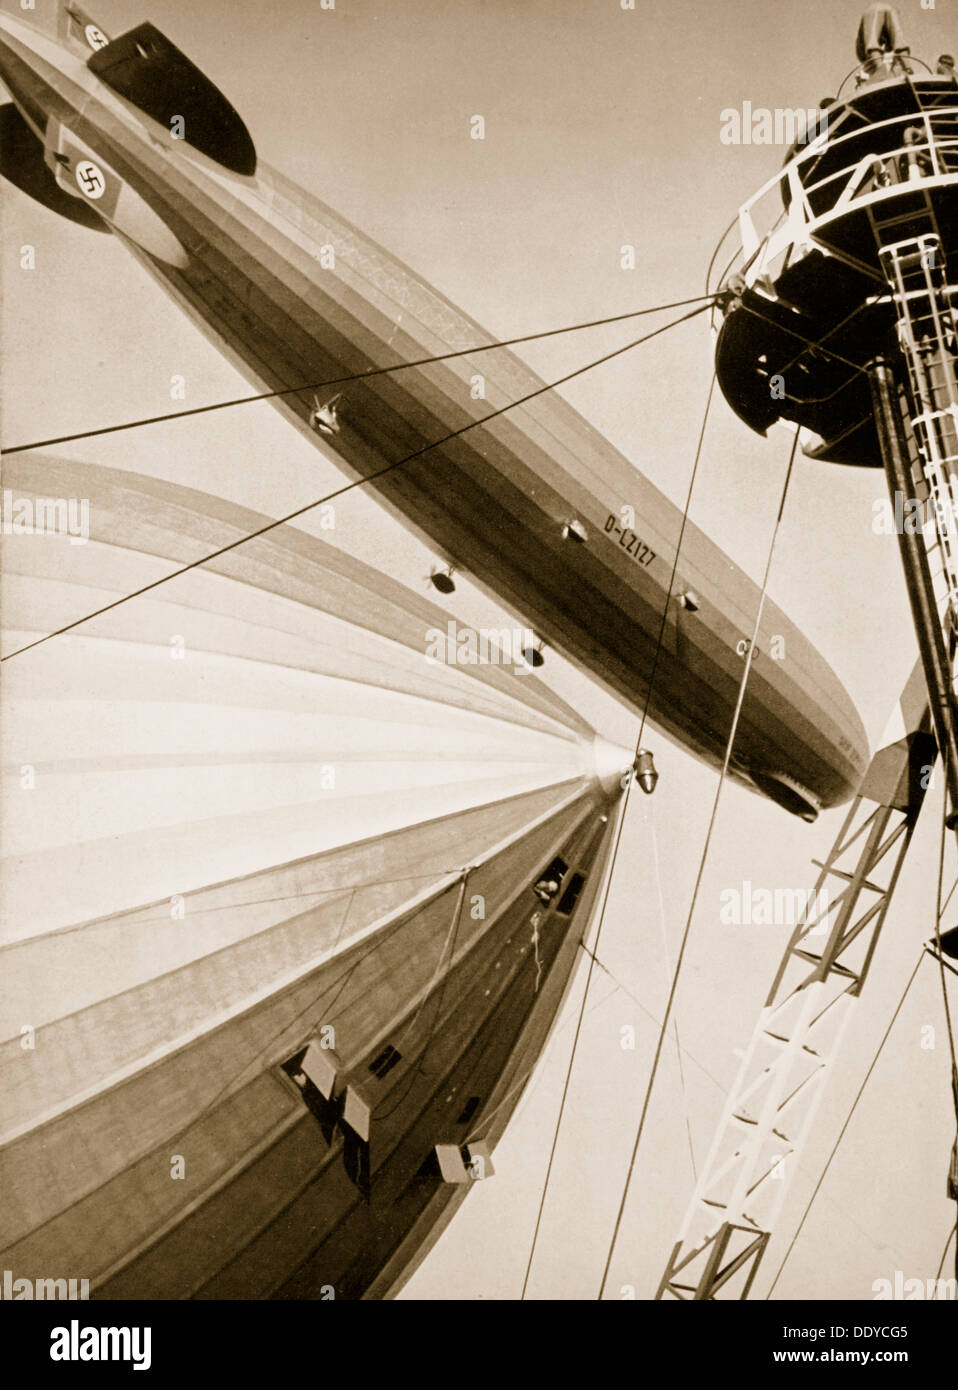 Deutschlands zwei mächtige Luftschiffe, die "Graf Zeppelin" und der "Hindenburg", 1936. Künstler: unbekannt Stockfoto